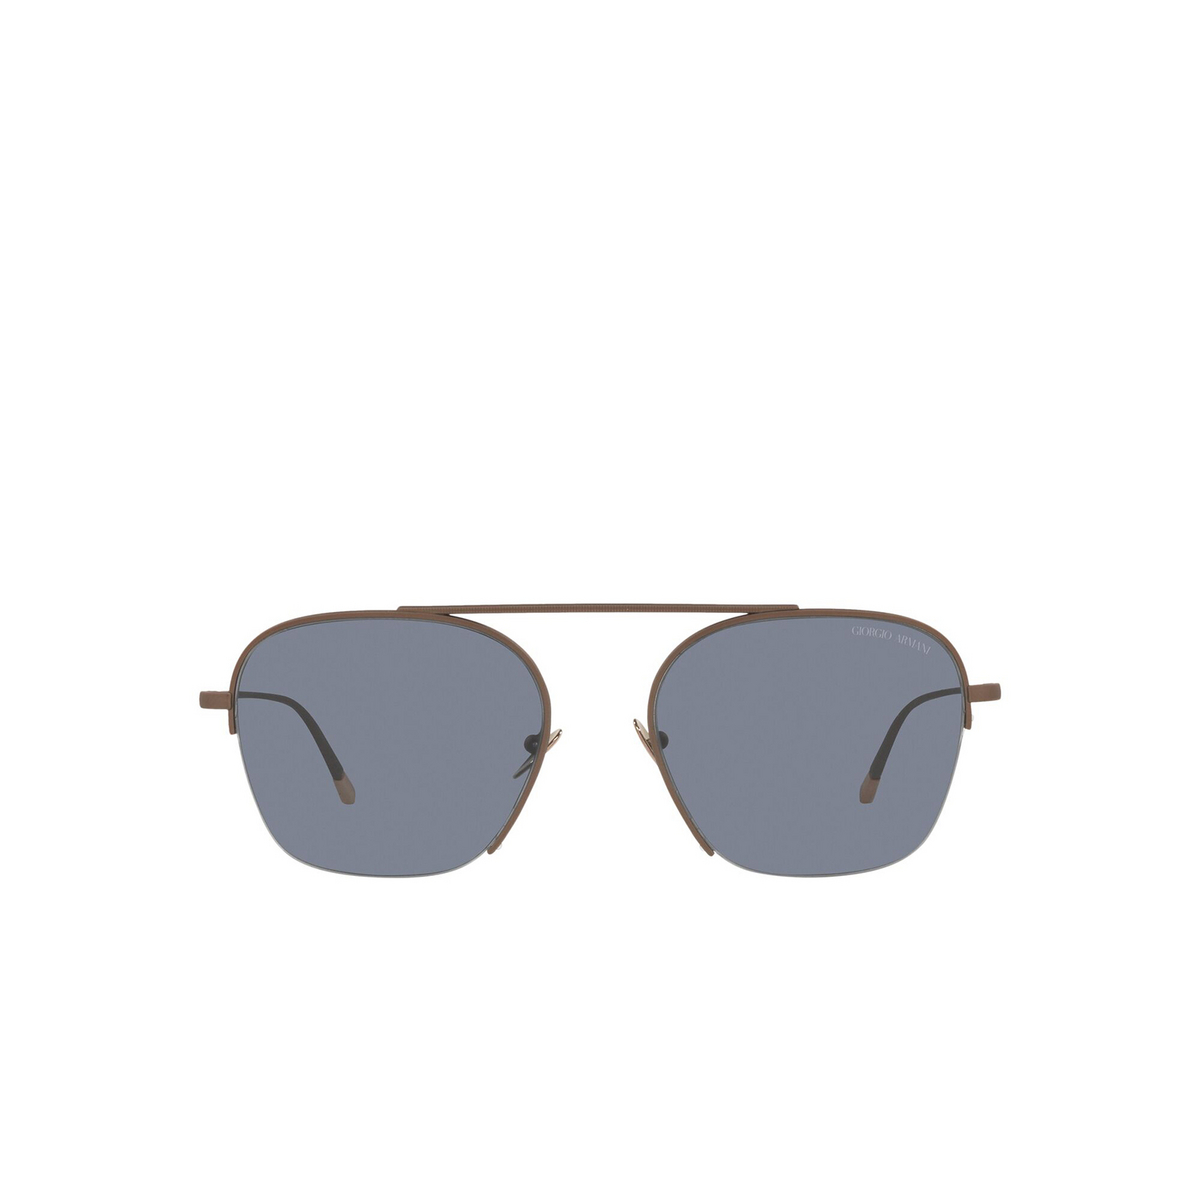 Giorgio Armani® Square Sunglasses: AR6124 color Matte Bronze 300619 - front view.